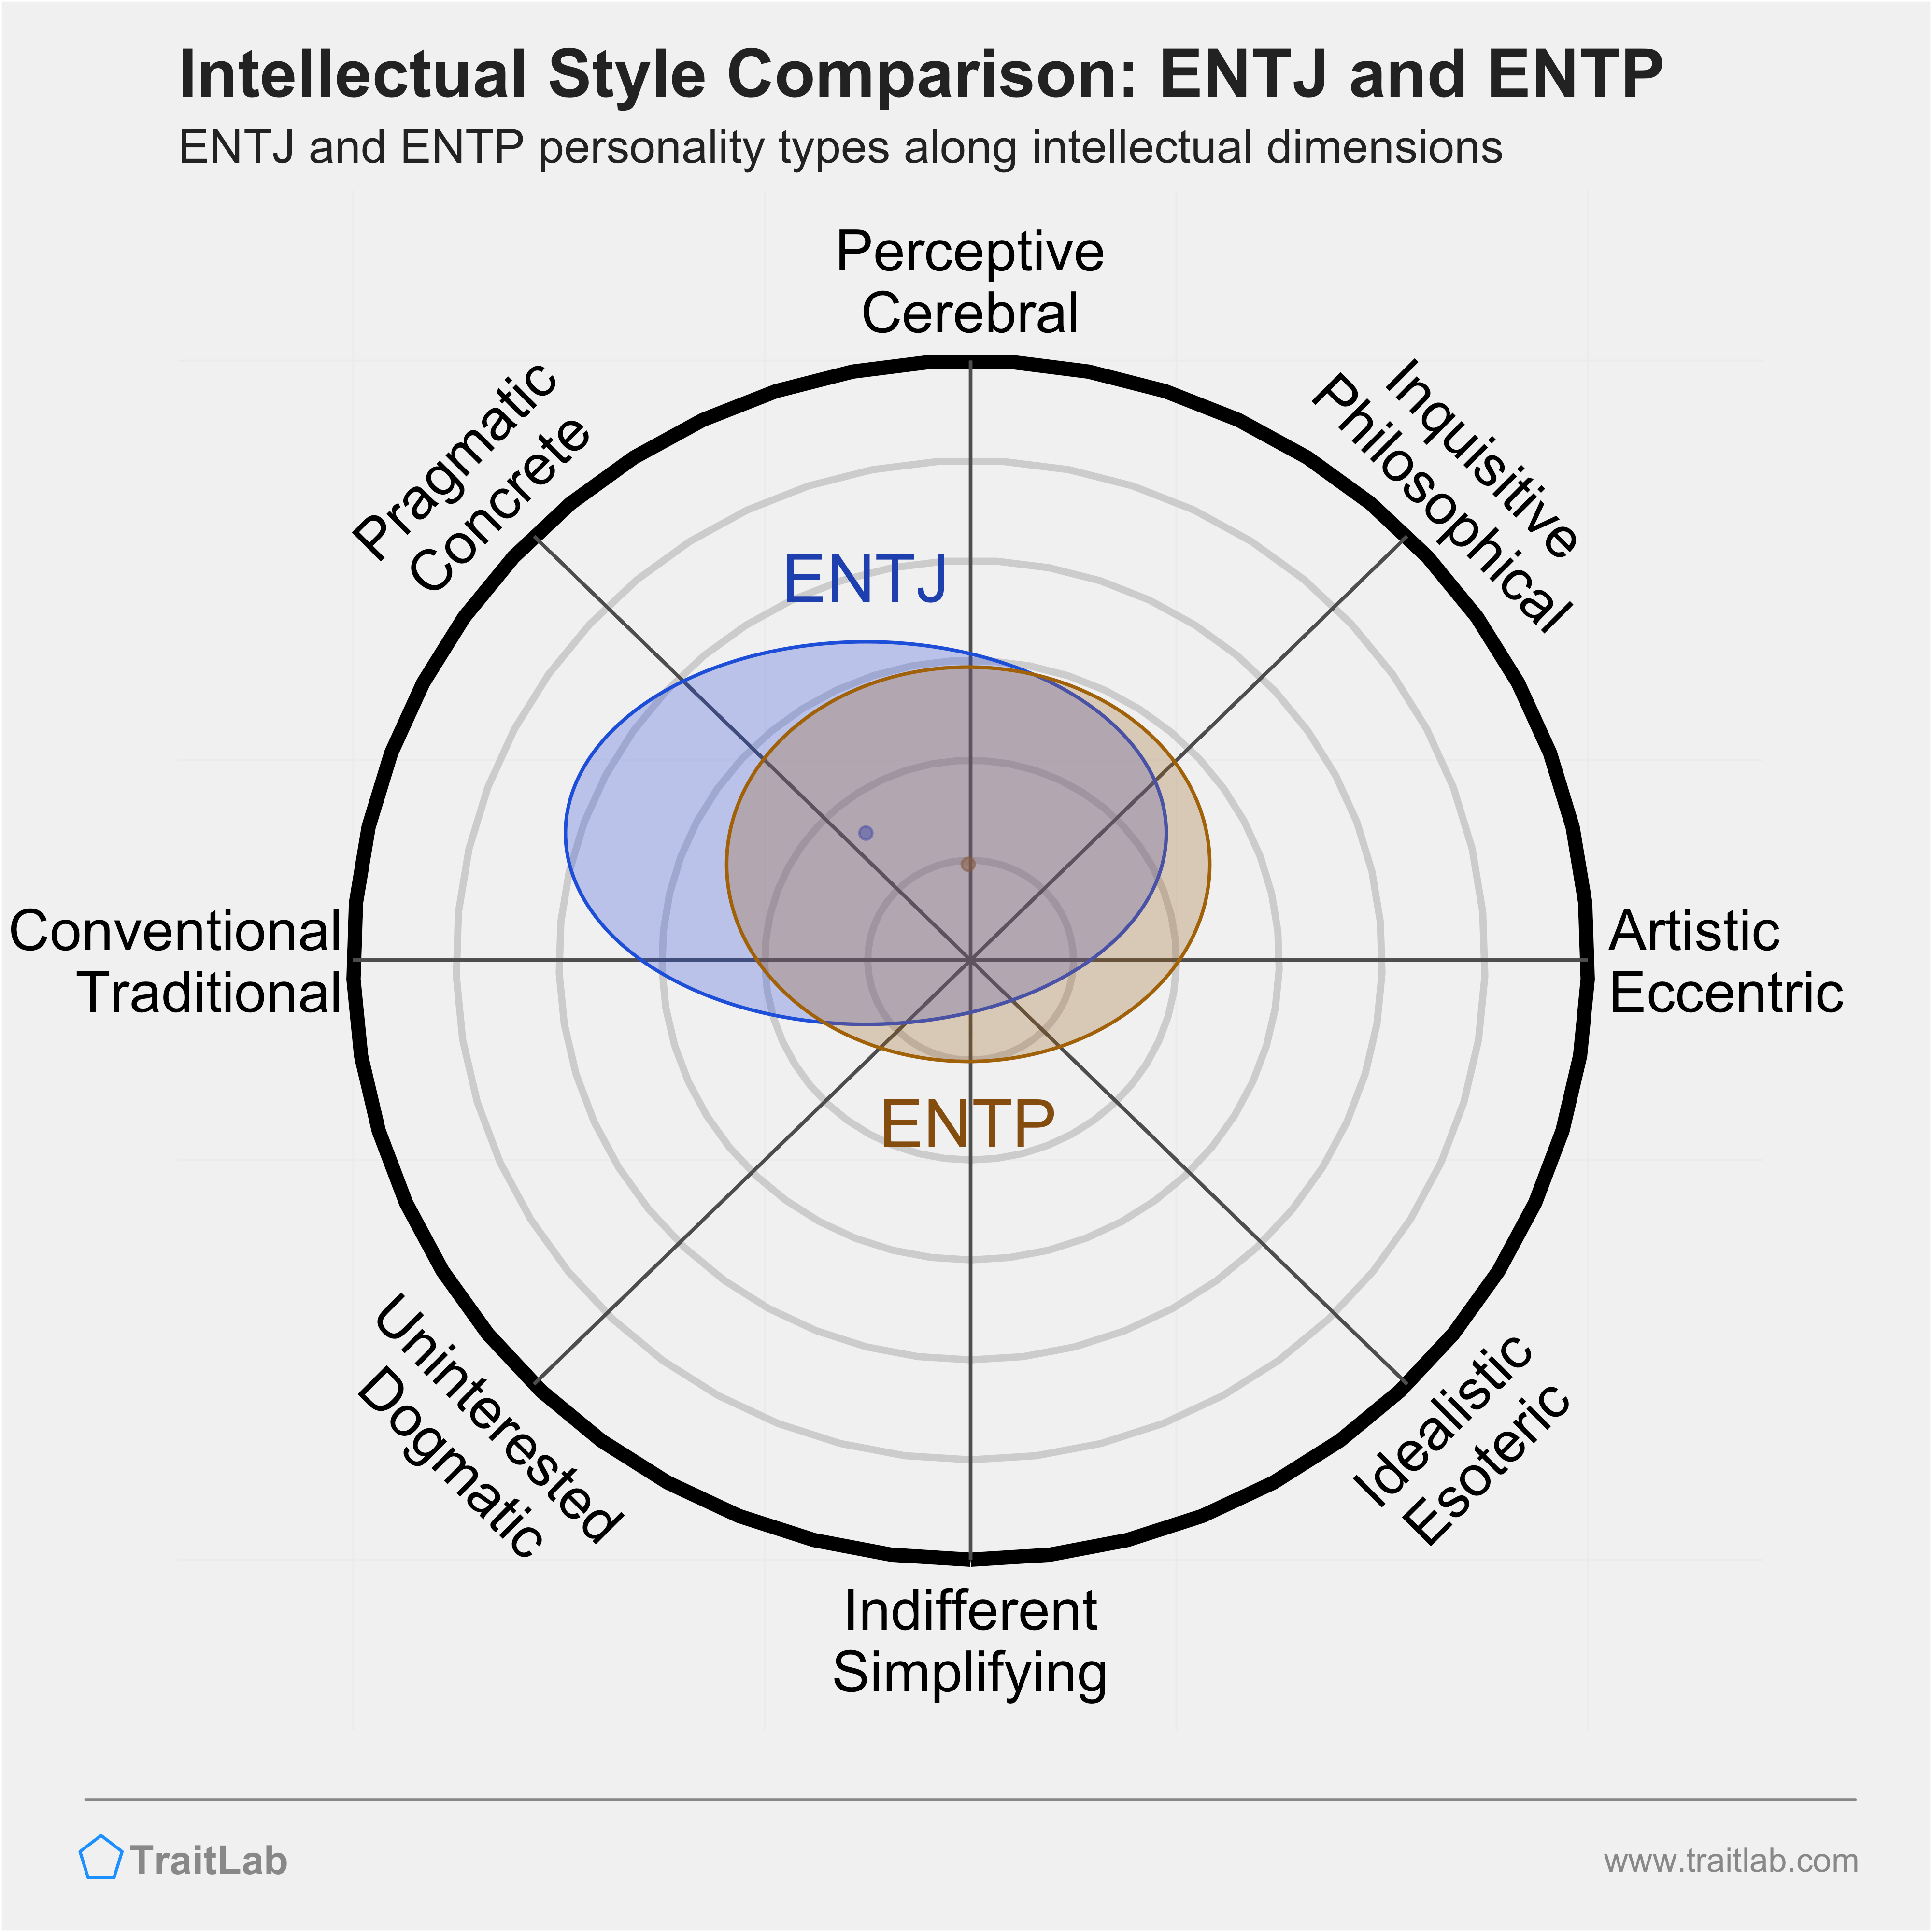 ENTJ and ENTP comparison across intellectual dimensions